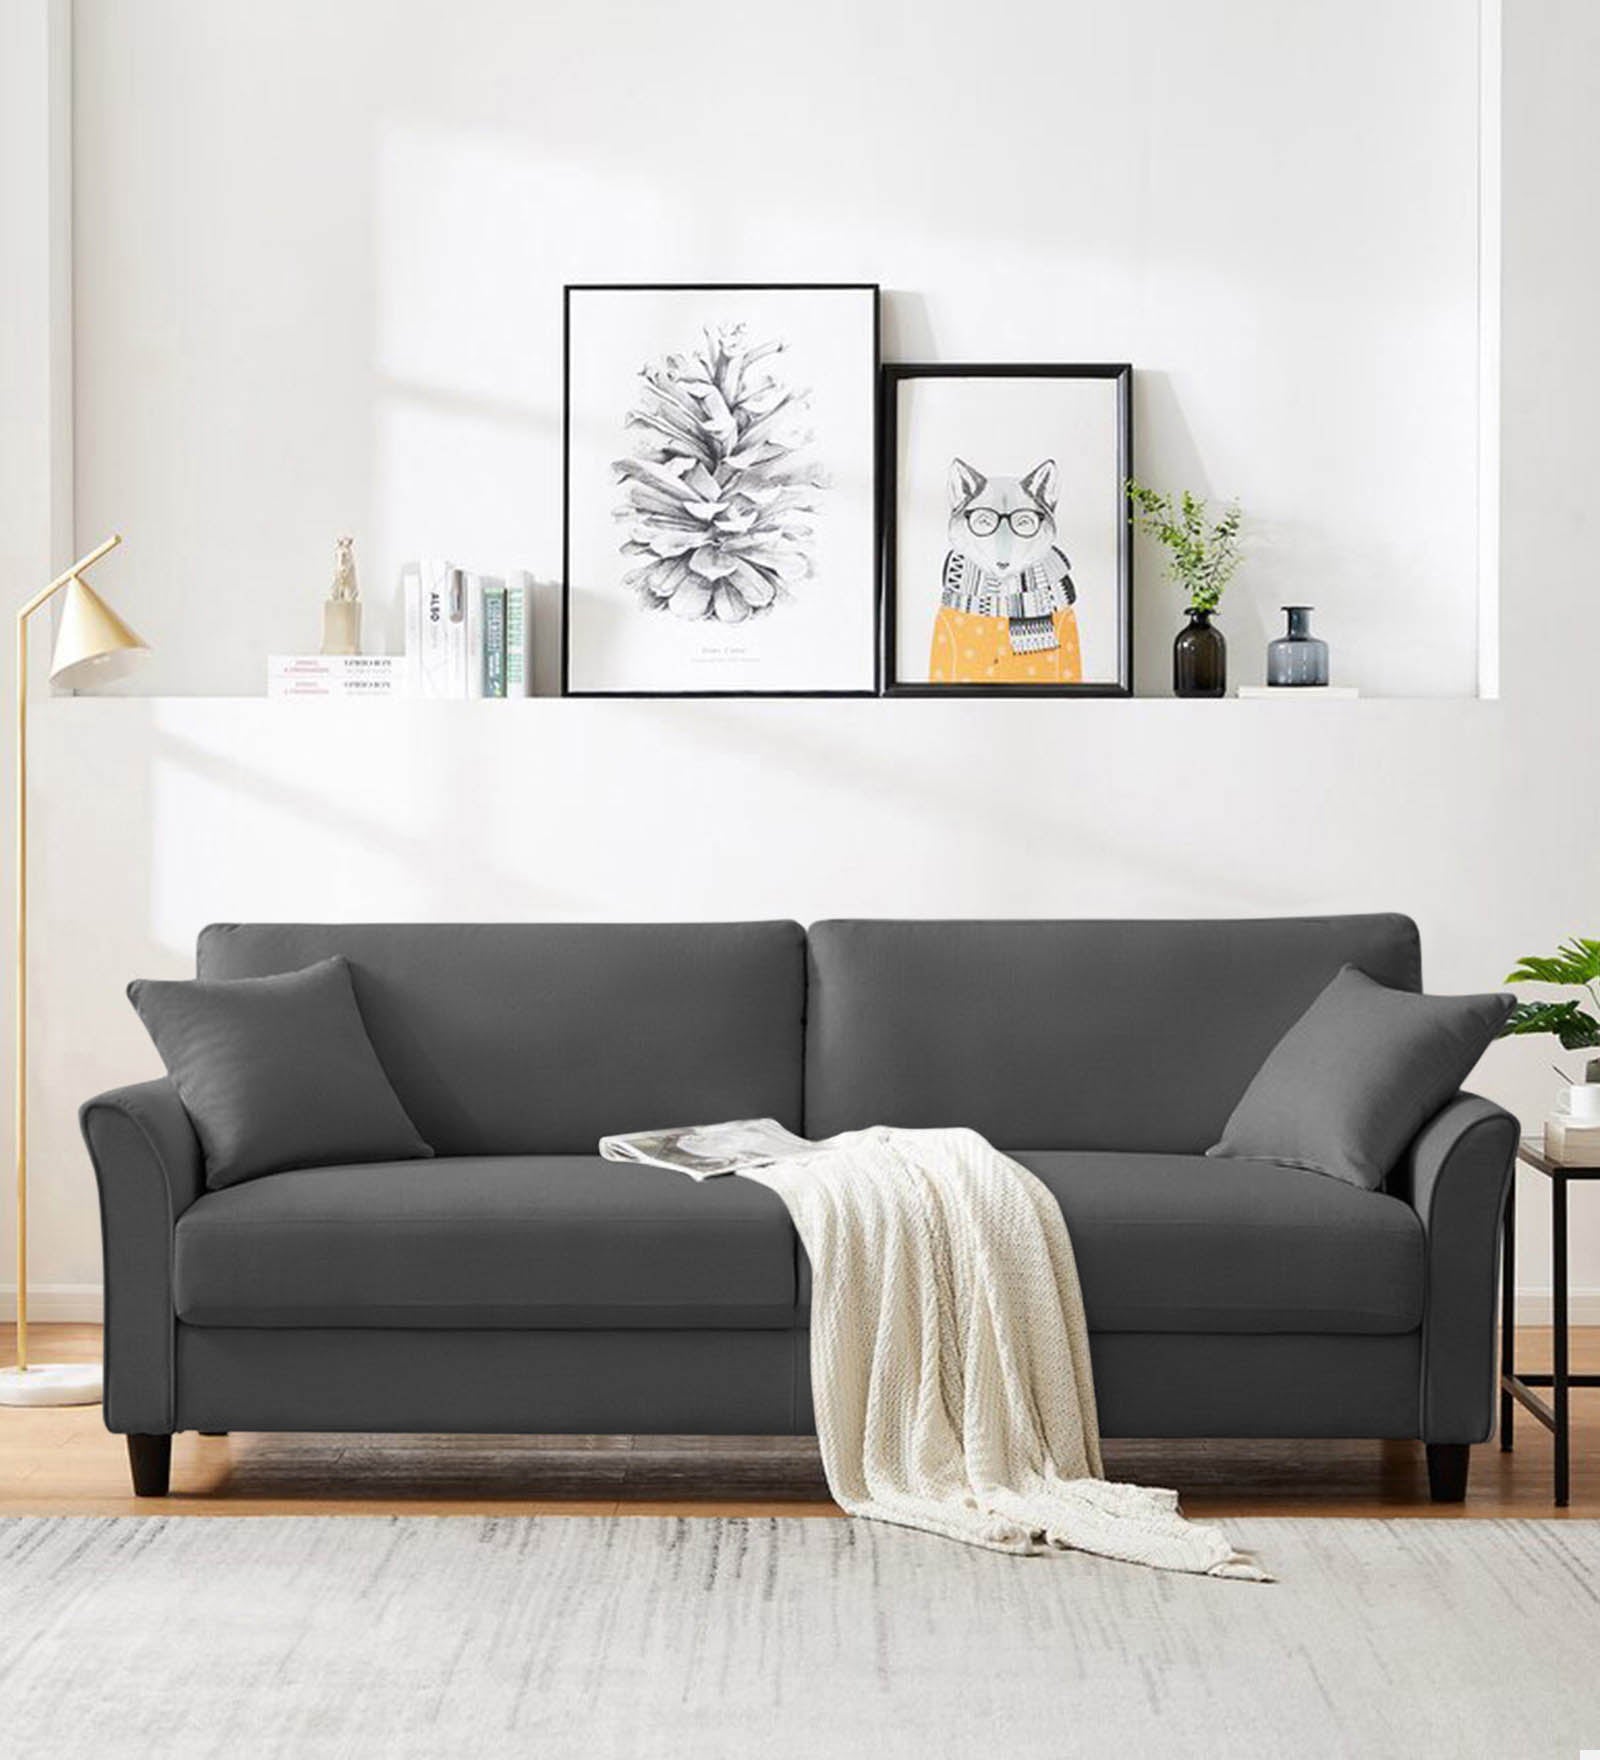 Daroo Velvet 3 Seater Sofa in Davy Grey Colour